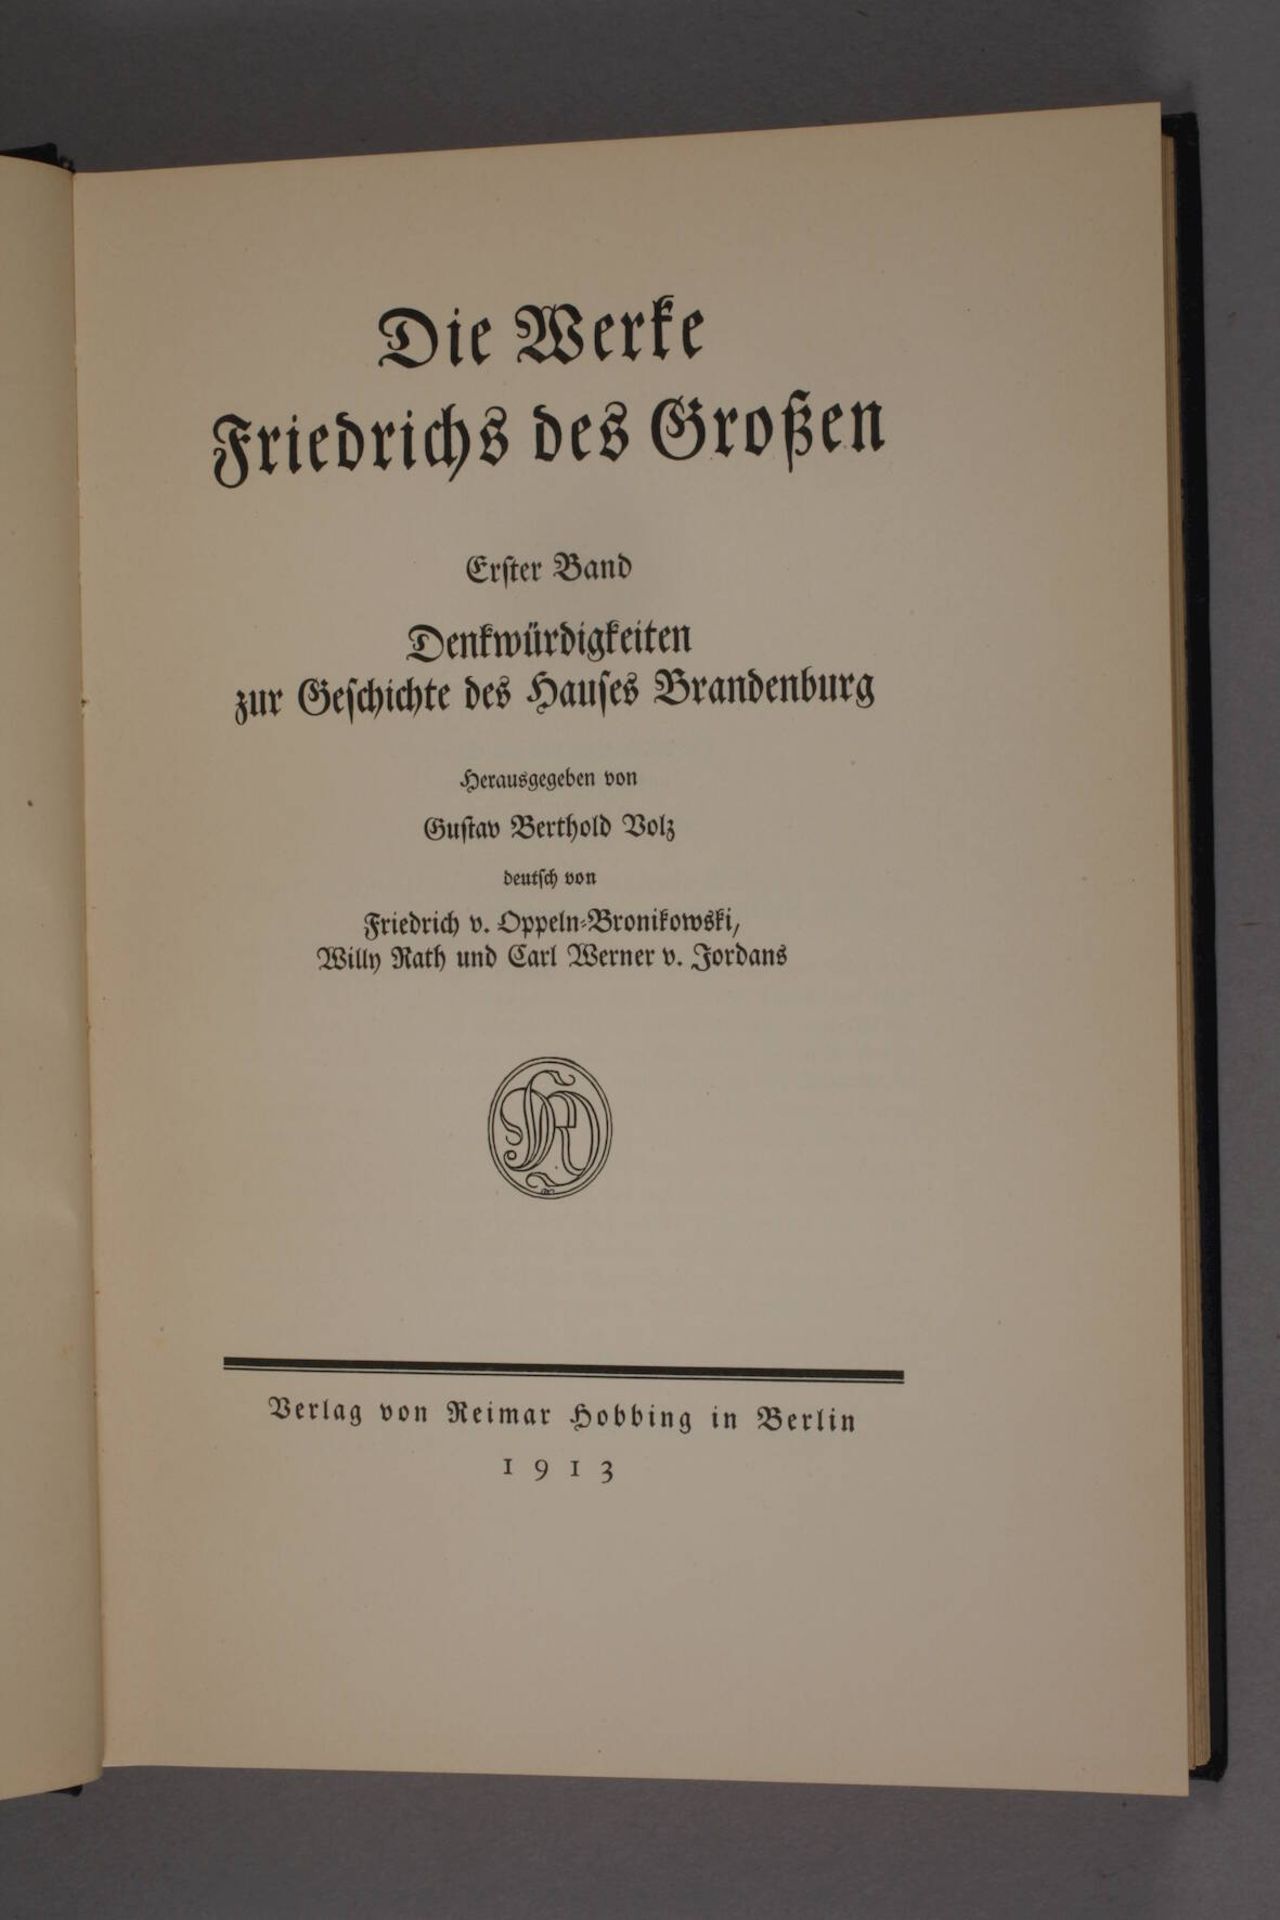 Die Werke Friedrichs des Großen - Image 4 of 6